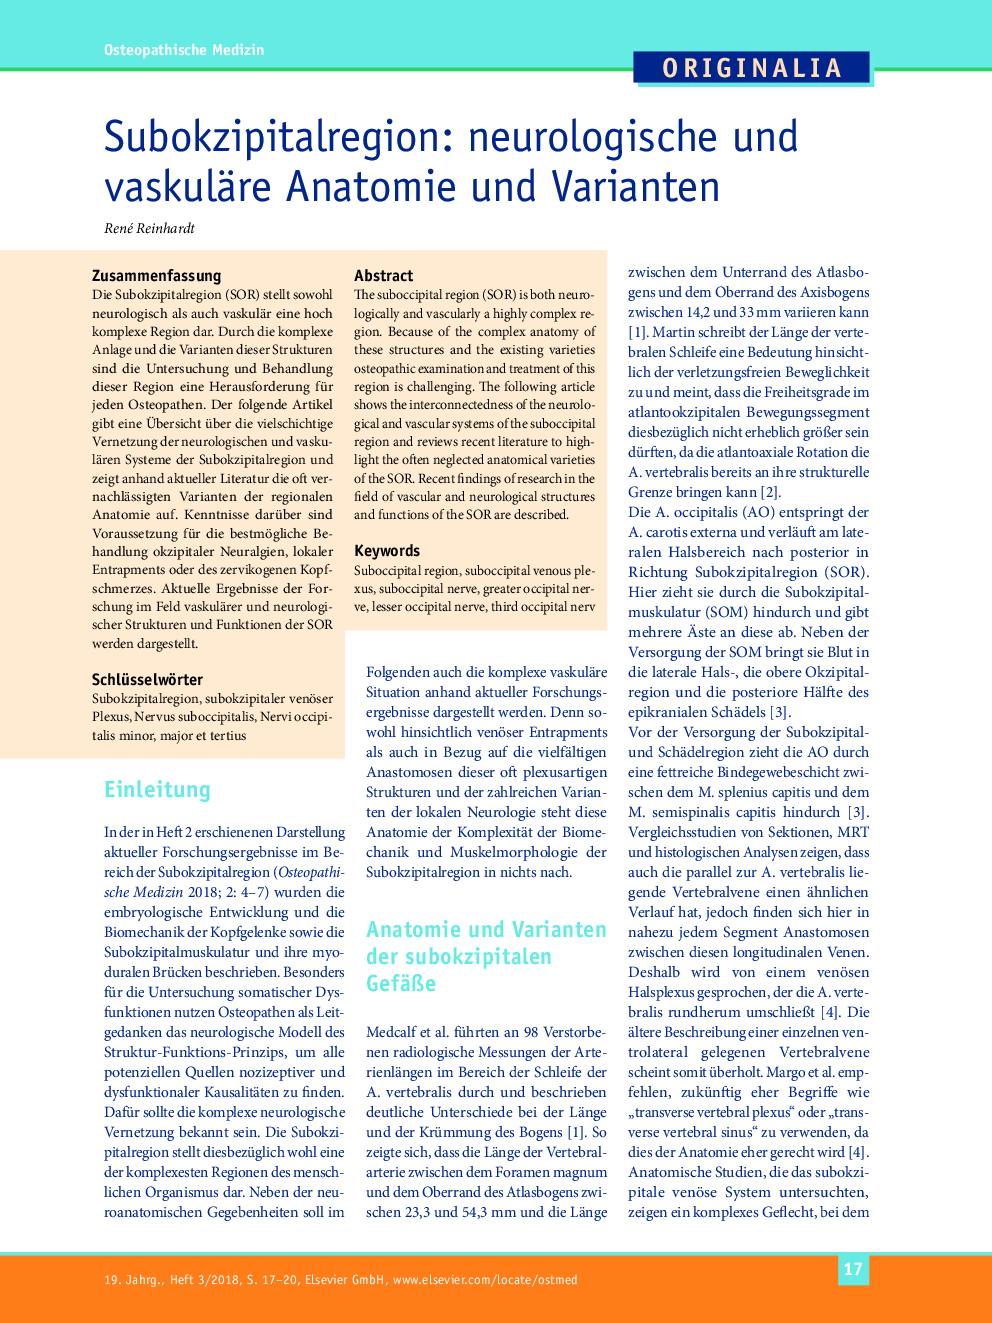 Subokzipitalregion: neurologische und vaskuläre Anatomie und Varianten